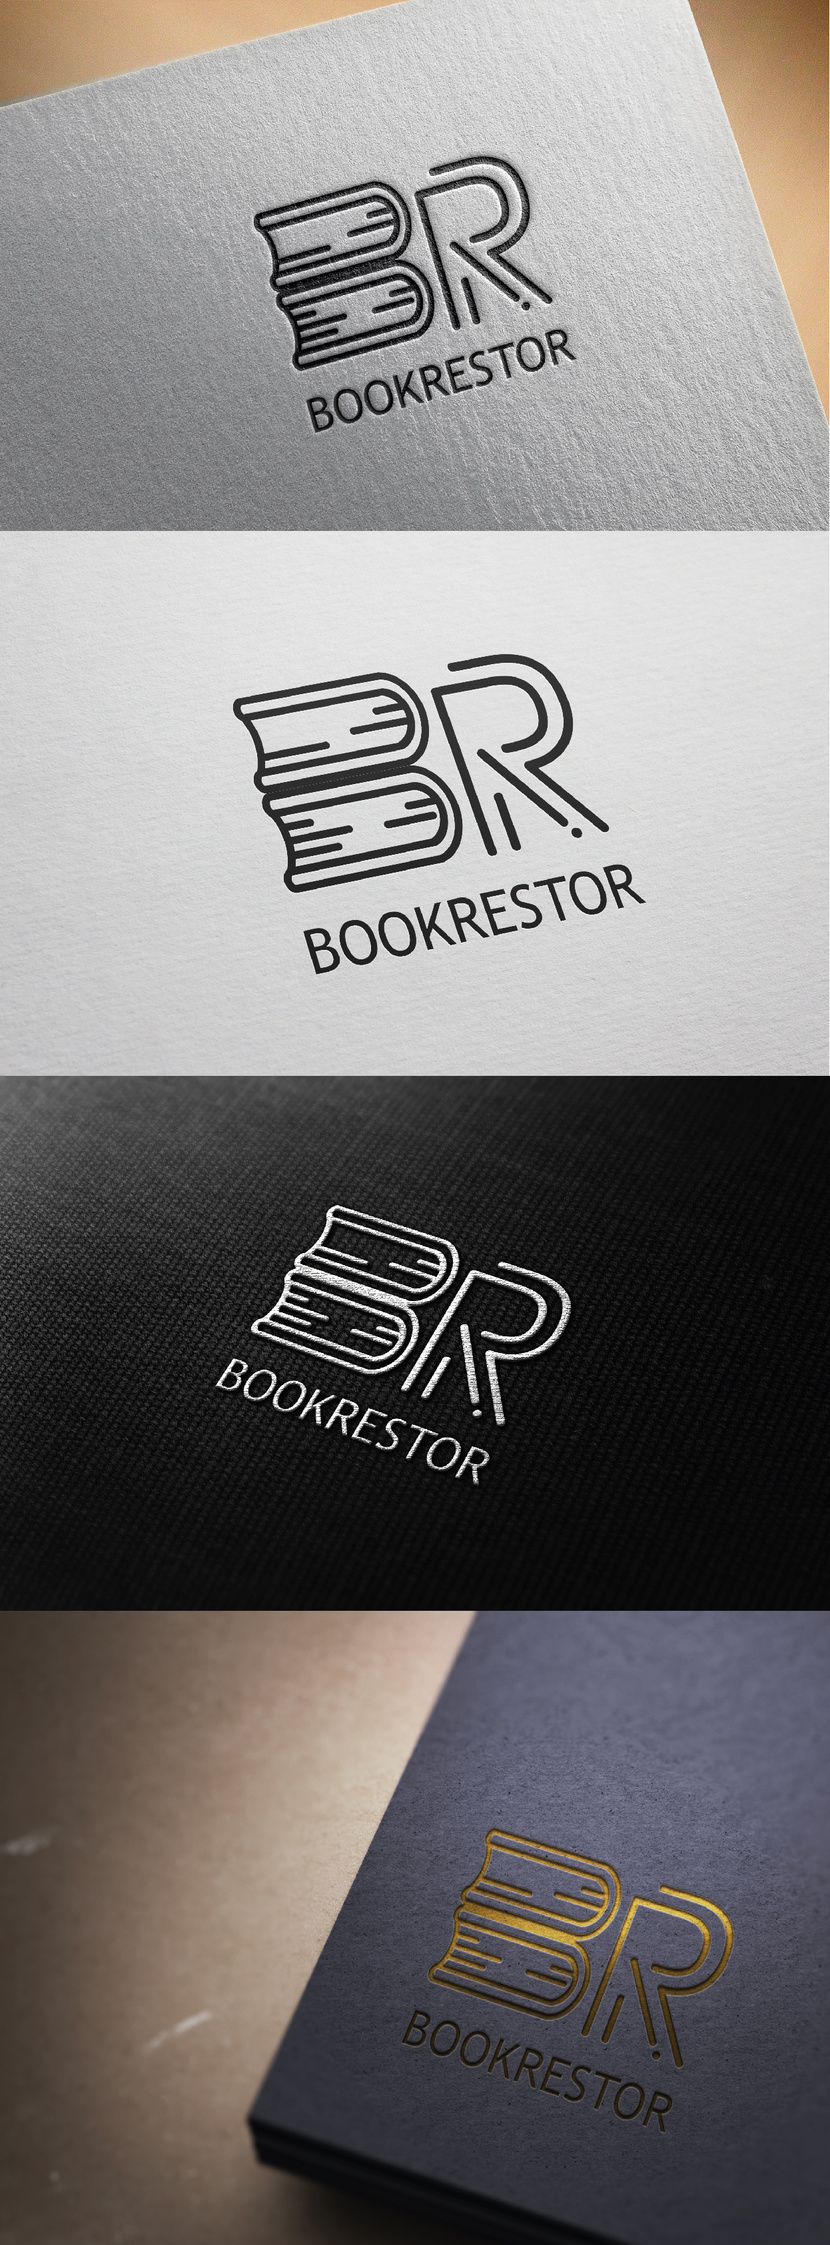 Logo BOOKRESTOR Логотип для мастерской которая занимается реставрацией книг и рукописей,  так же гравюр, карт.